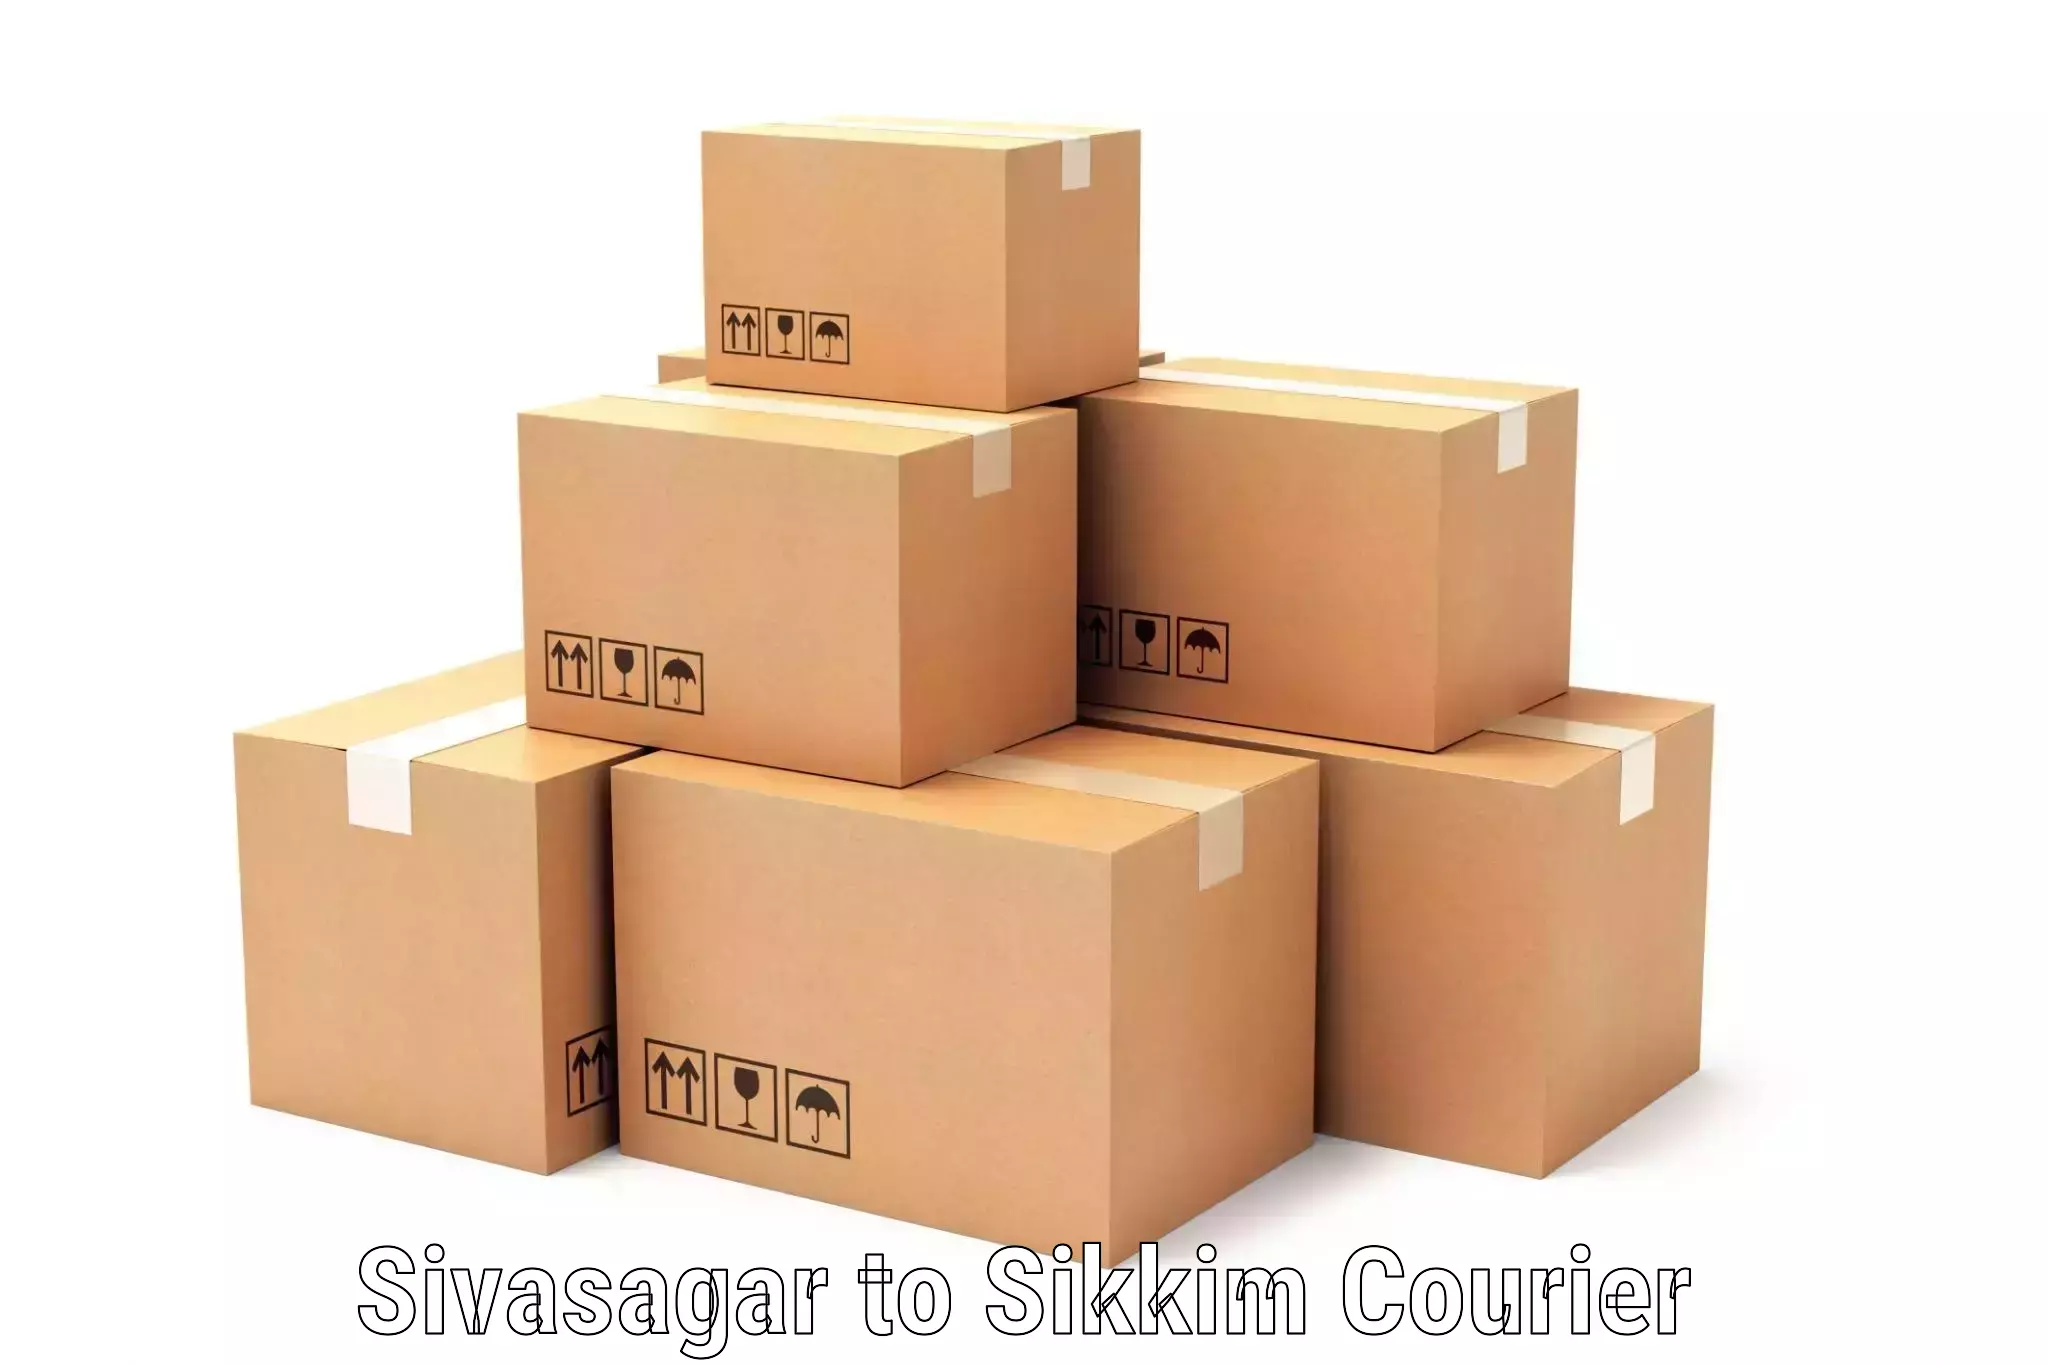 Comprehensive shipping services Sivasagar to Gangtok